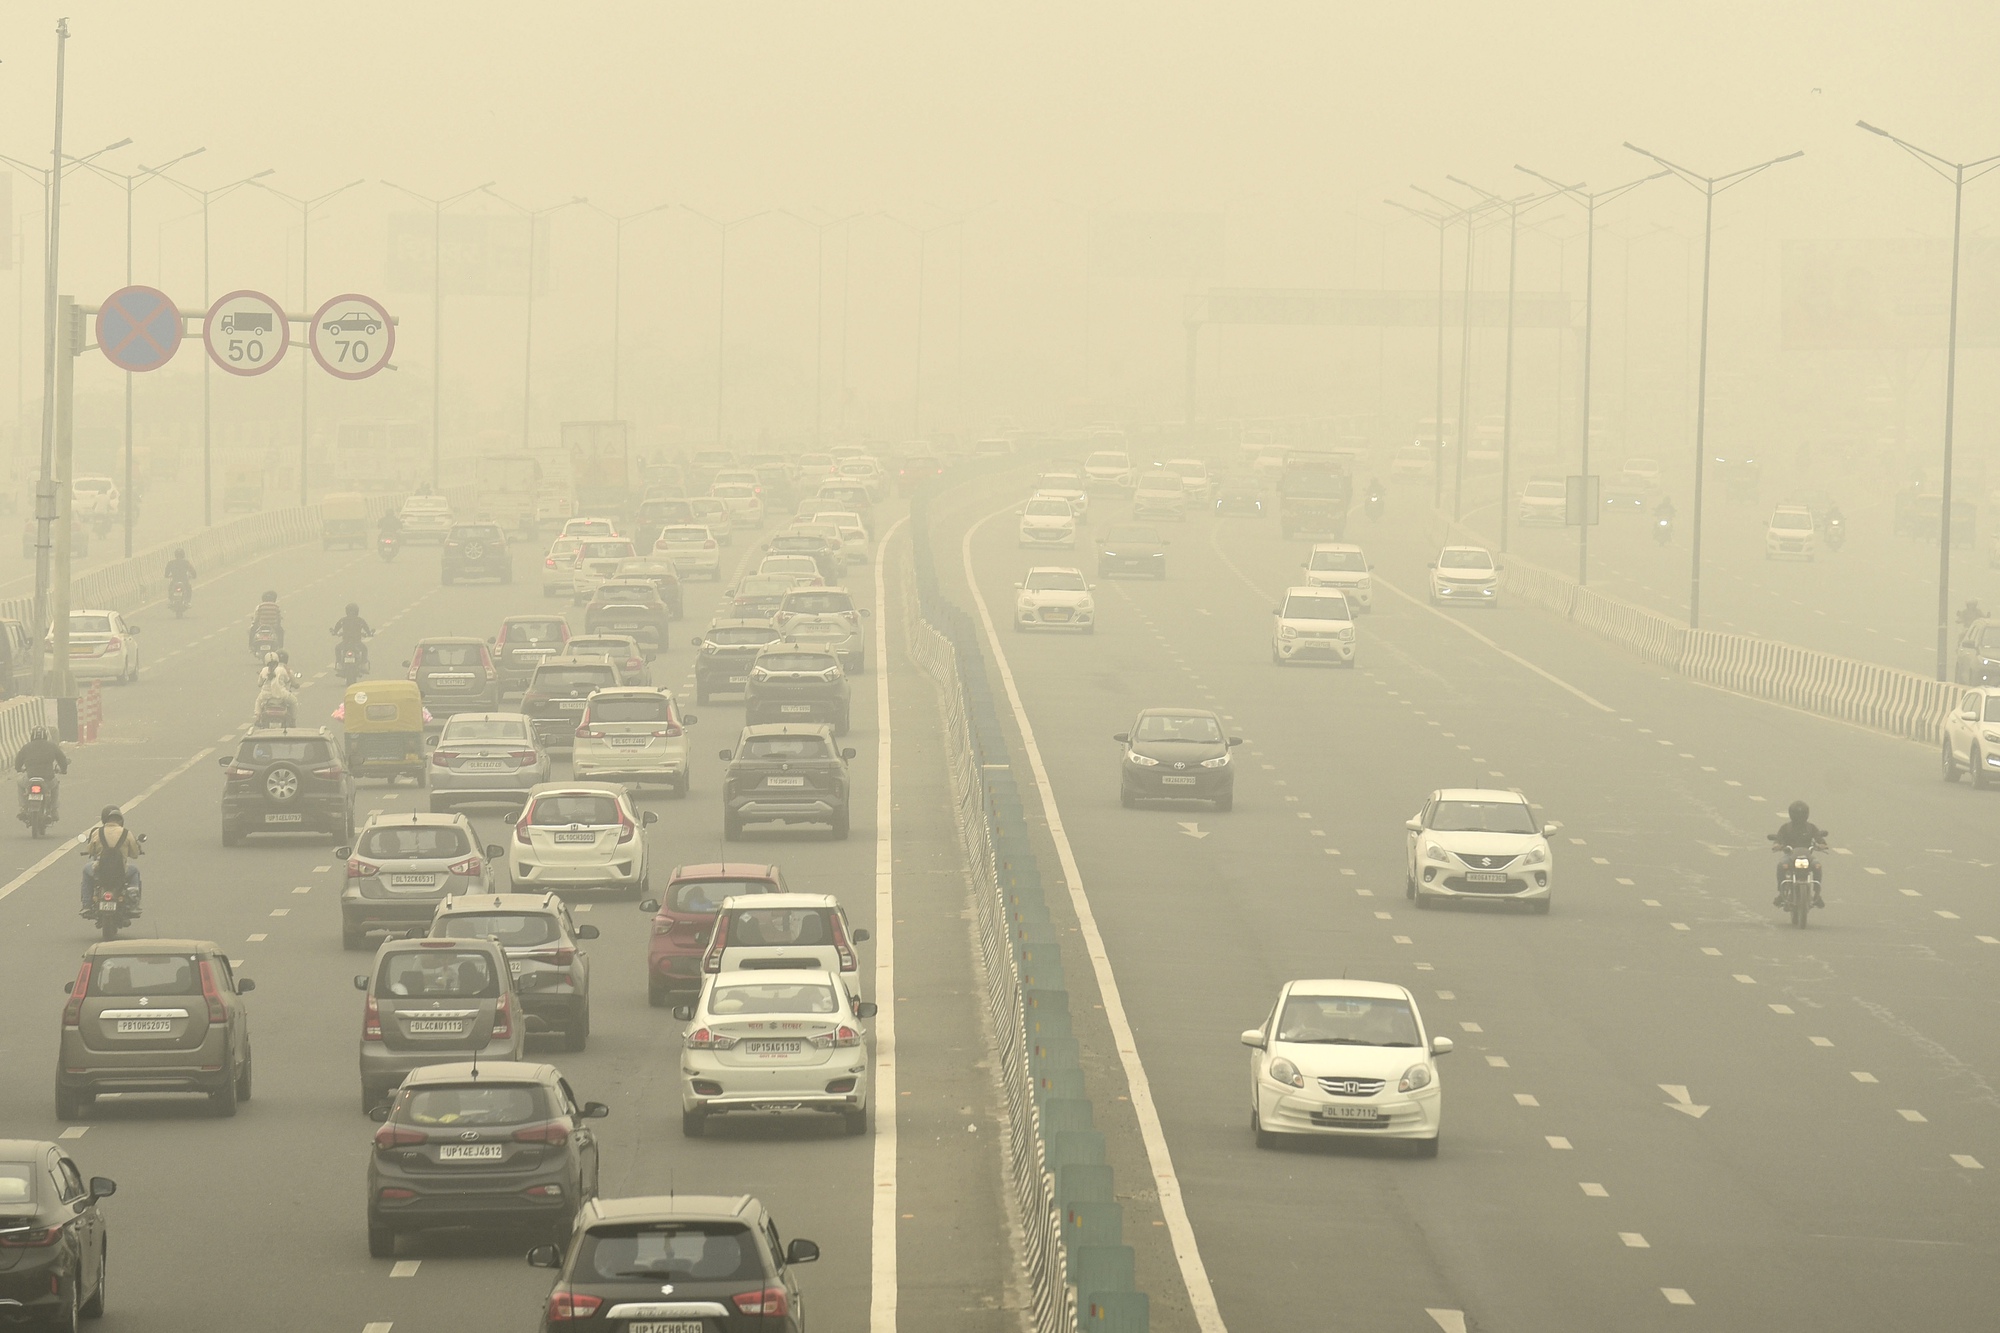 Khói mù bao trùm New Delhi, ô nhiễm gấp 100 lần ngưỡng an toàn của LHQ  - Ảnh 2.